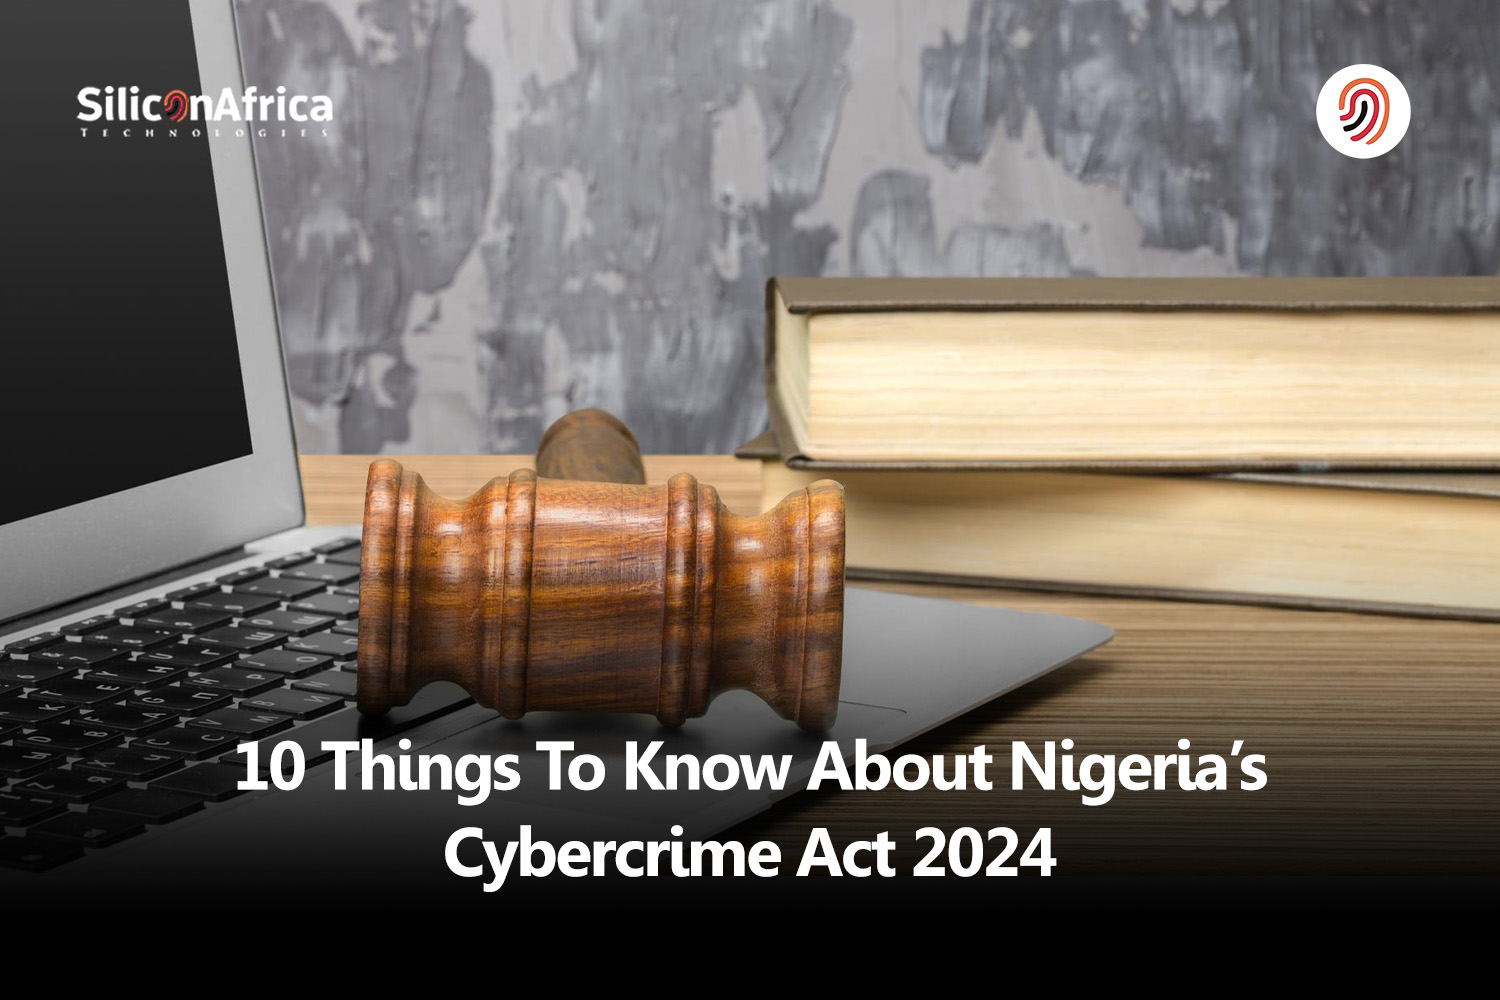 Nigeria’s Cybercrime Act